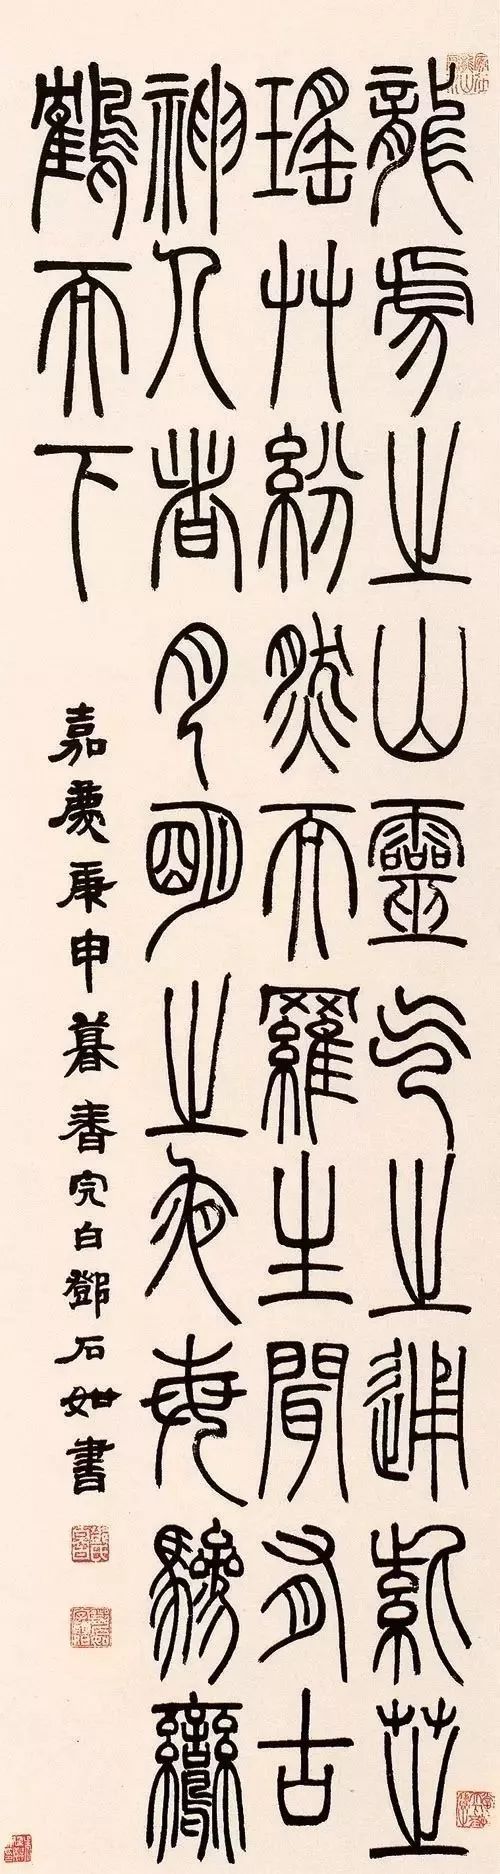 邓石如篆书特色之一是注入隶书写法,笔意,这大致体现在三点:一是某些